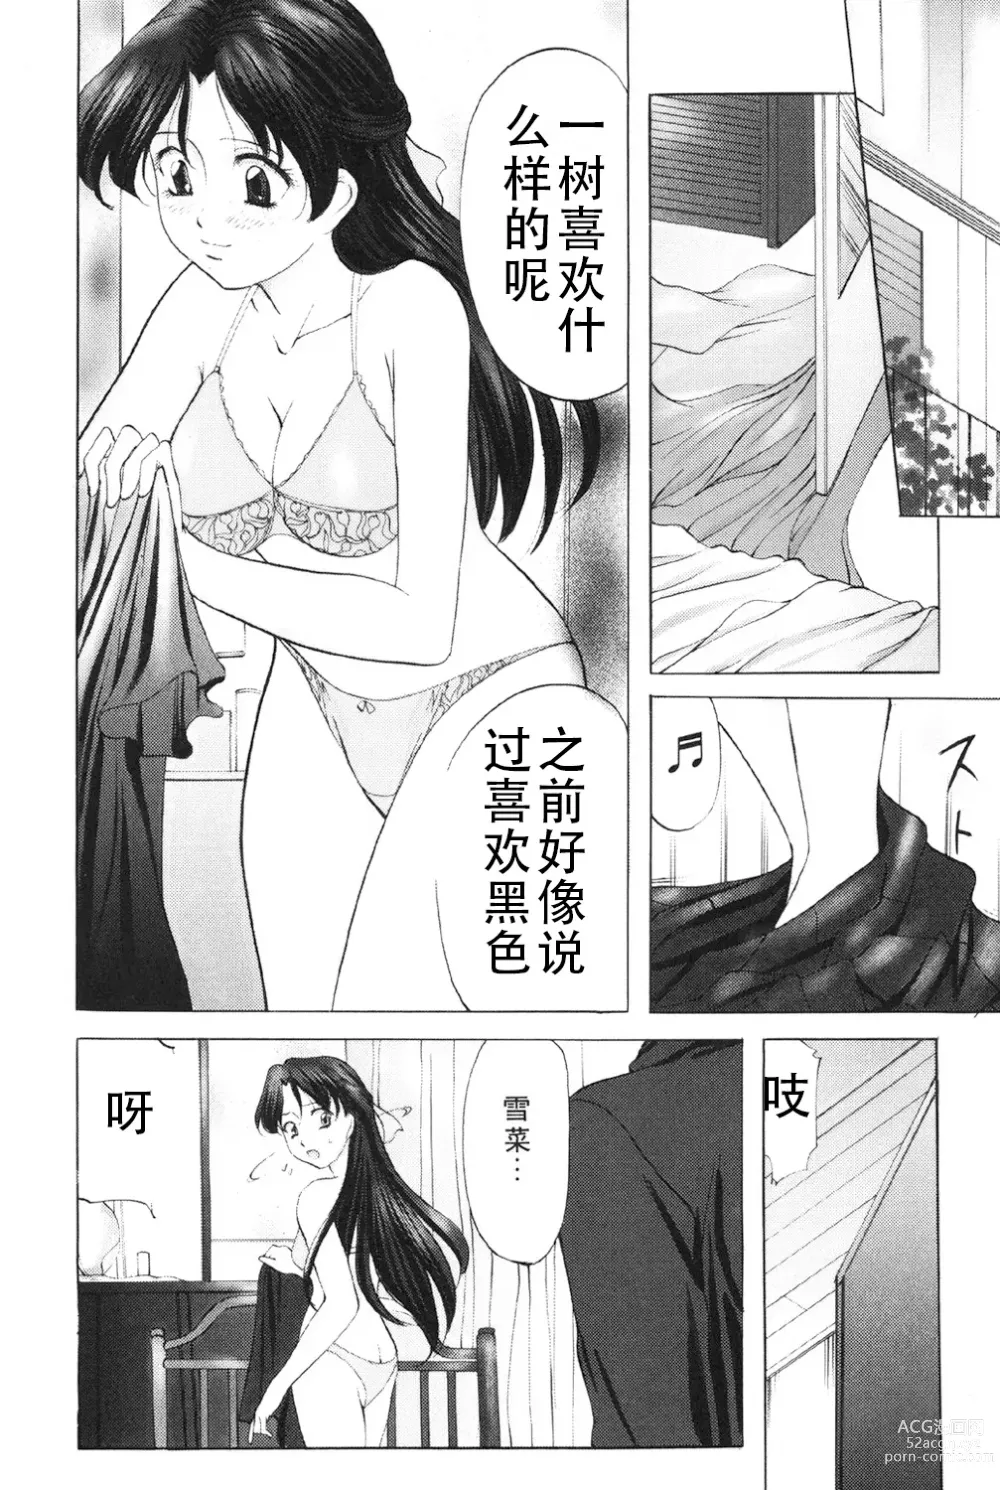 Page 9 of manga Kichiku Paradise - The Cruel Person Paradise